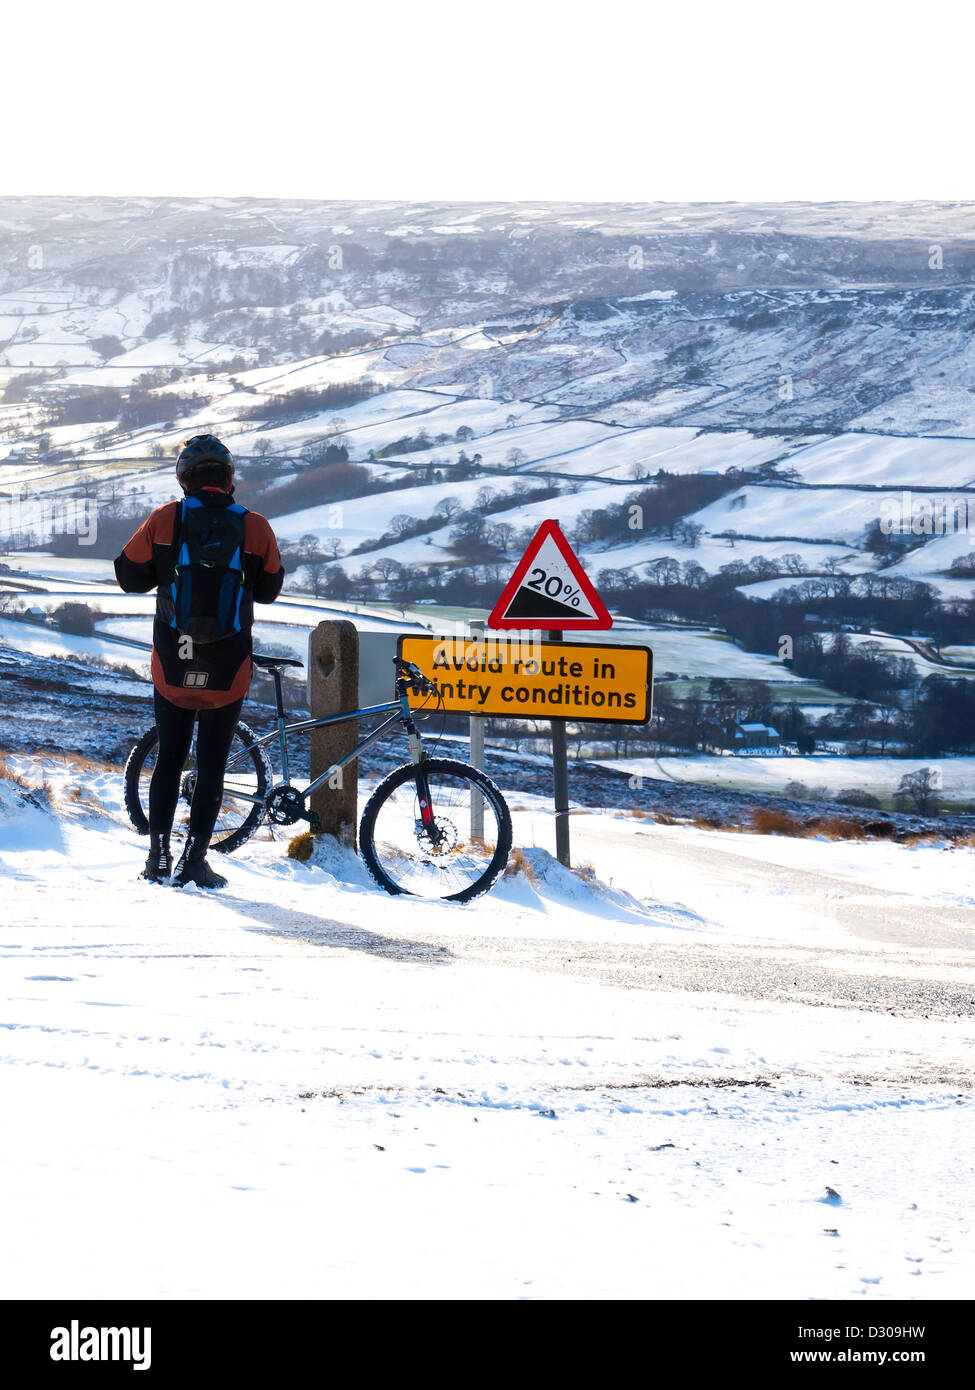 Ein Radfahrer ruht über eine vermeiden Route in winterlichen Bedingungen Zeichen auf einem steilen Hügel mit Blick auf Farndale im Schnee Stockfoto